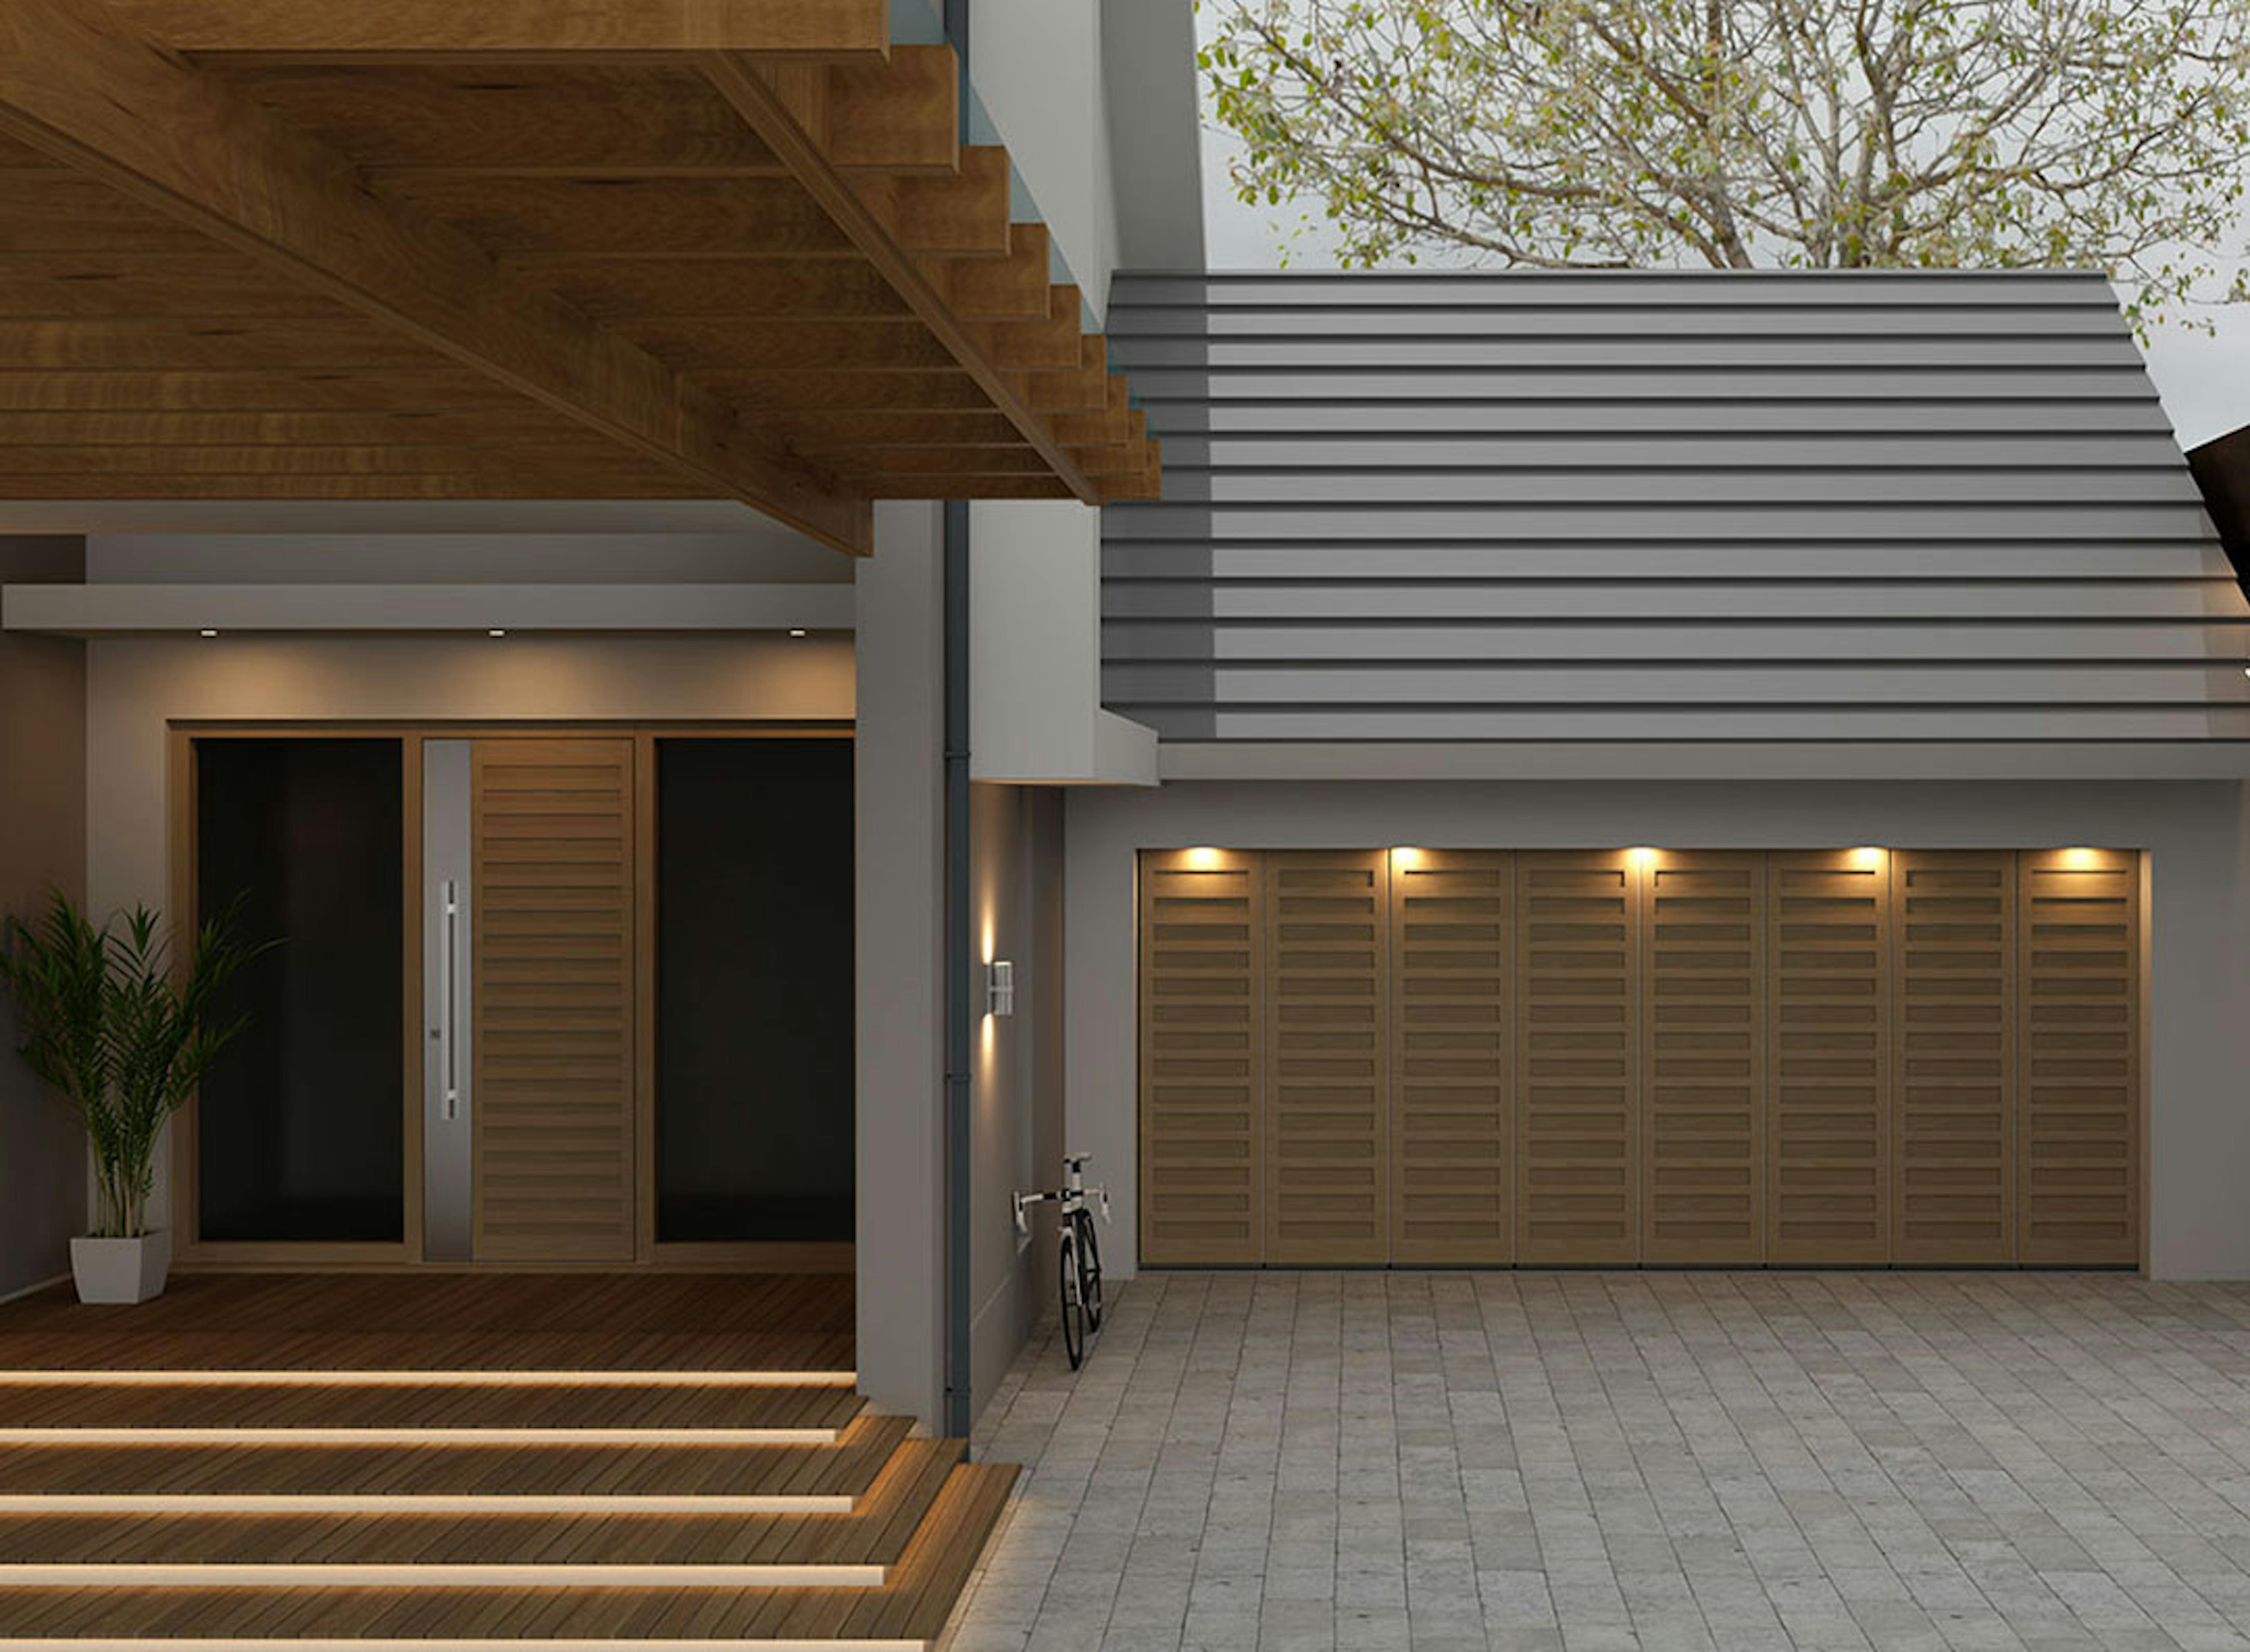 Matching external front door and garage door in Deuren Como S